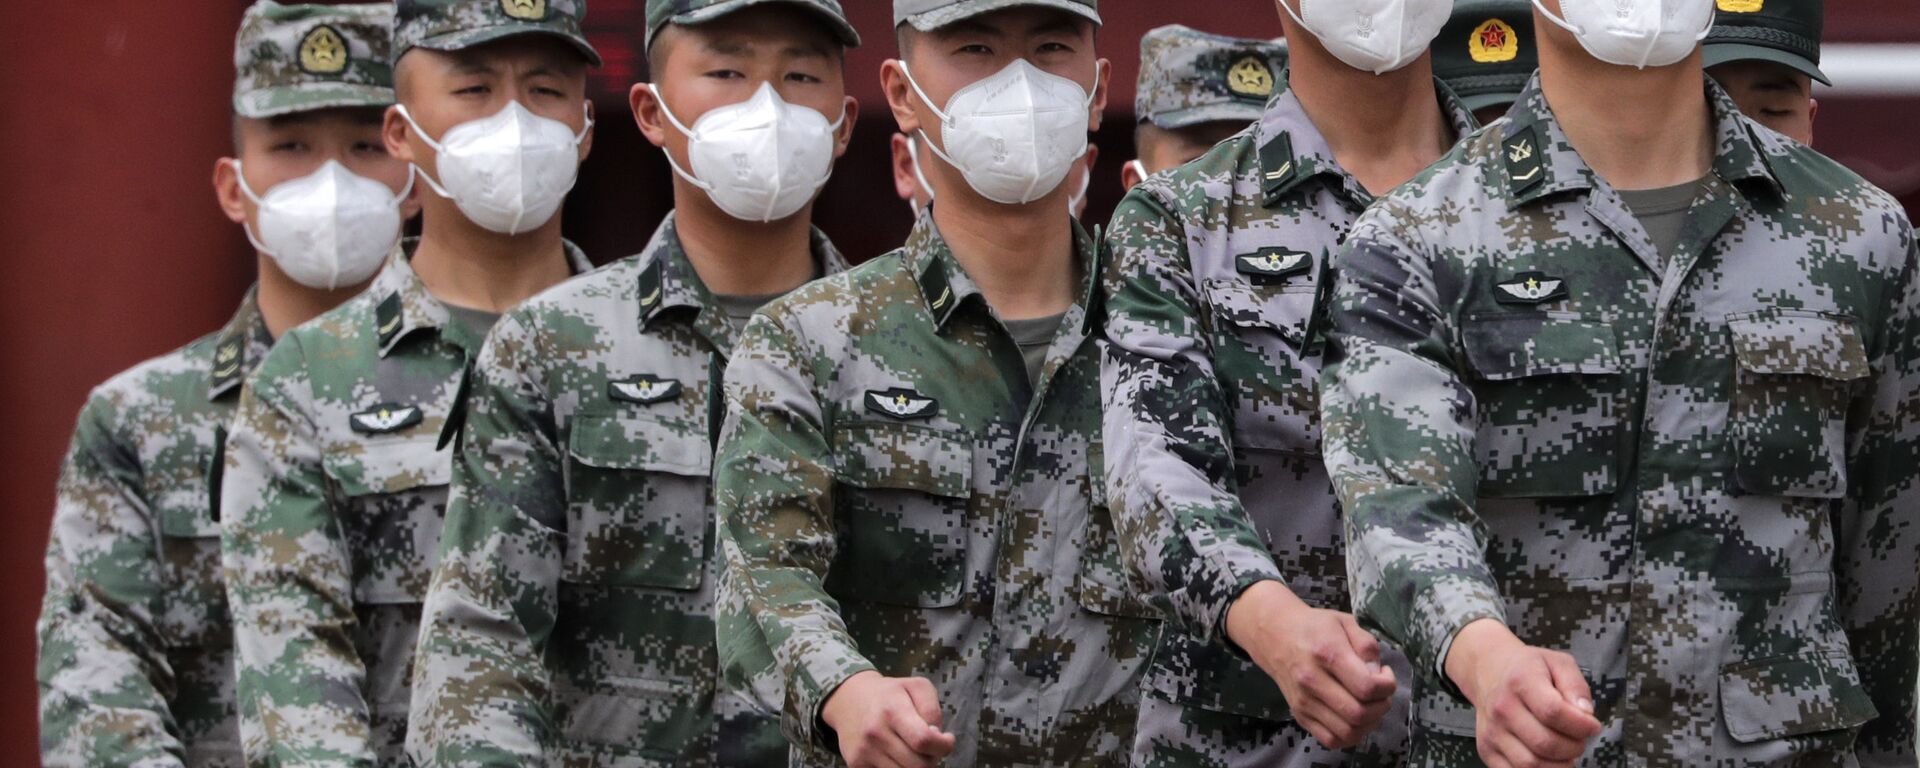 Soldados do Exército de Libertação Popular (ELP) usando máscaras para se proteger contra a propagação do novo coronavírus marcham durante uma sessão plenária do Congresso Nacional do Povo Chinês (NPC) no Grande Salão do Povo em Pequim, maio 25, 2020.  - Sputnik Brasil, 1920, 02.12.2021